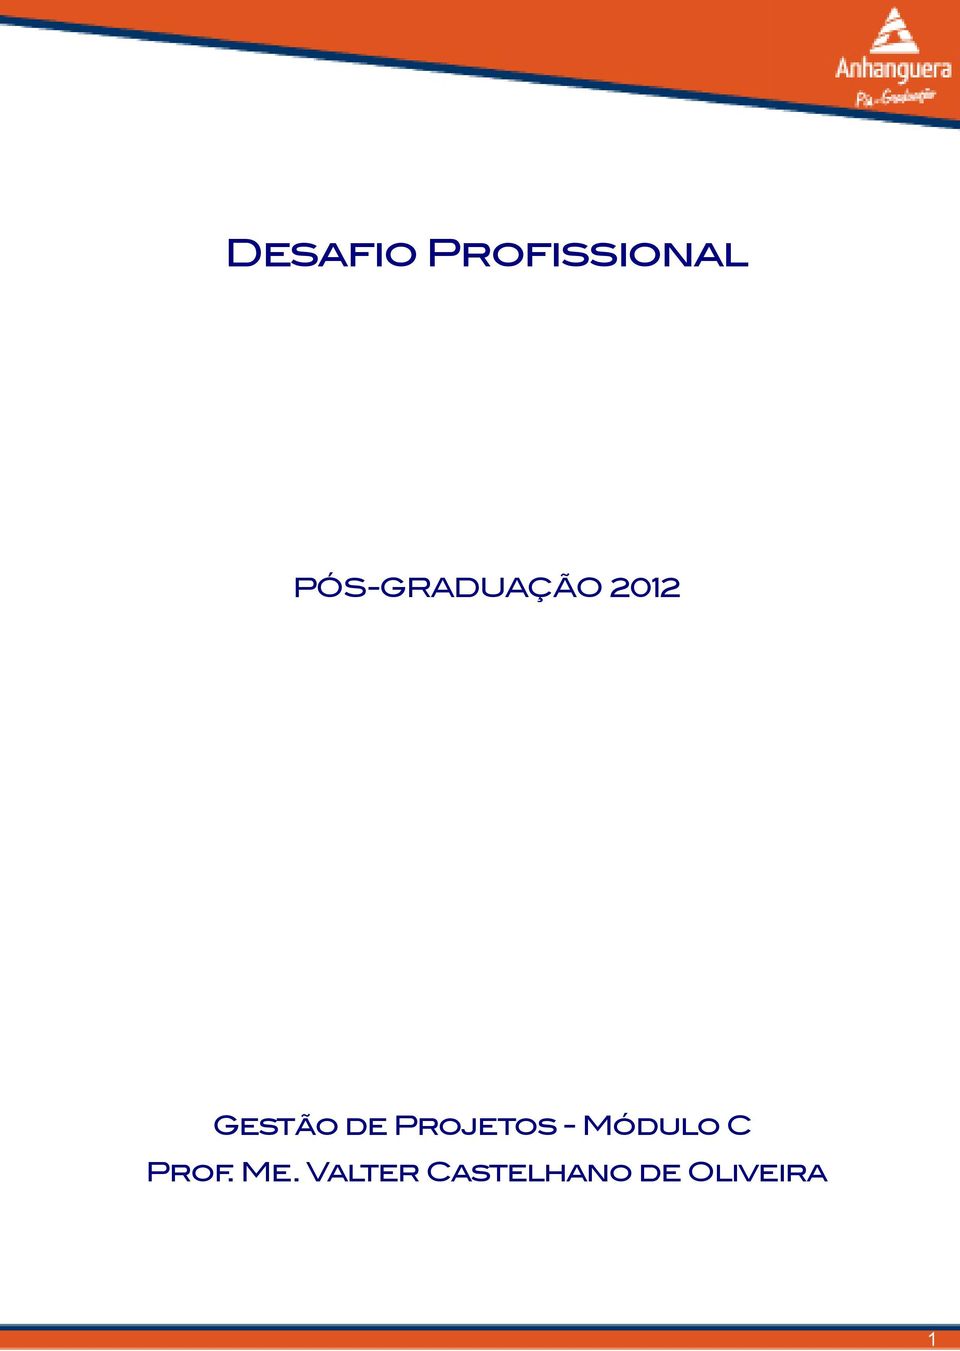 Projetos - Módulo C Prof.